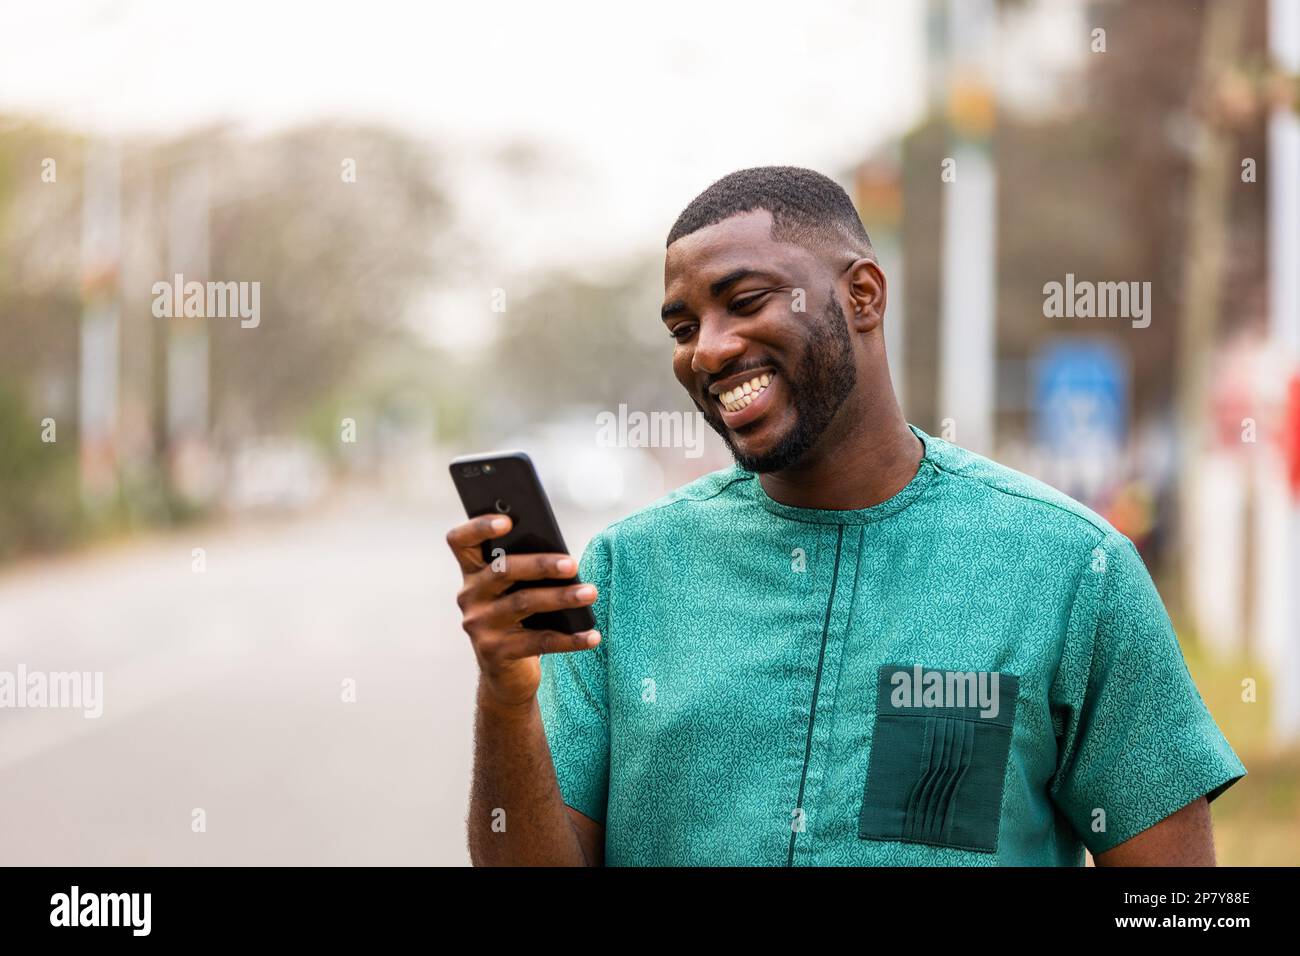 Jeune homme africain utilisant un appareil mobile pour les médias sociaux, Portrait de l'homme noir tenant le smartphone Banque D'Images